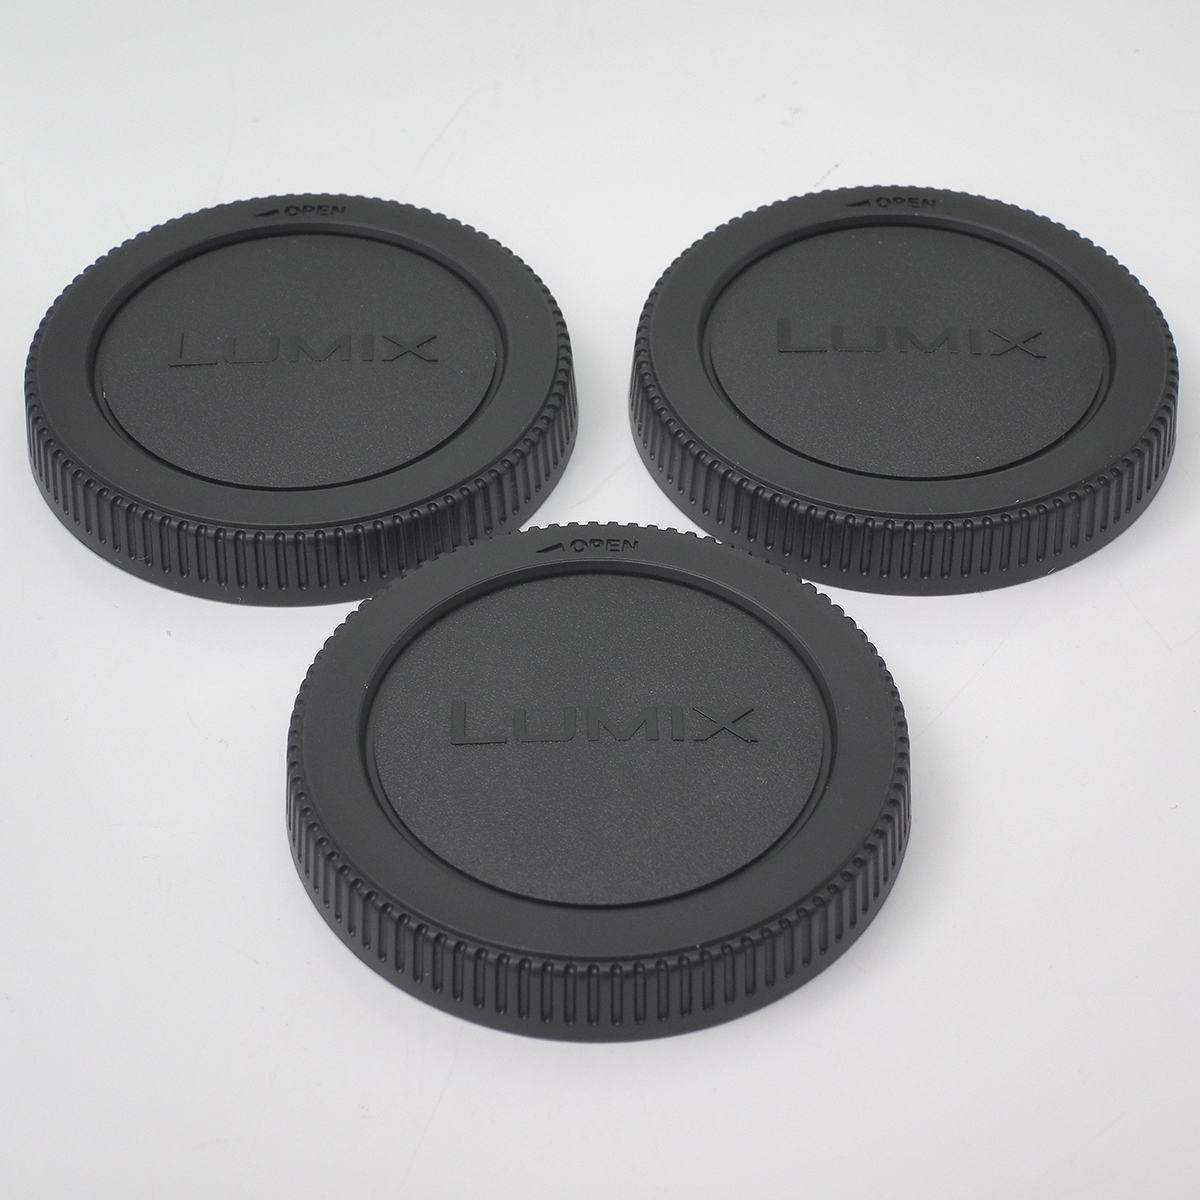 3個セット パナソニック LUMIX 純正 リア レンズ キャップ (リアキャップ) マイクロフォーサーズ規格レンズ用 オリンパスも可 開封未使用品_状態はきれいです